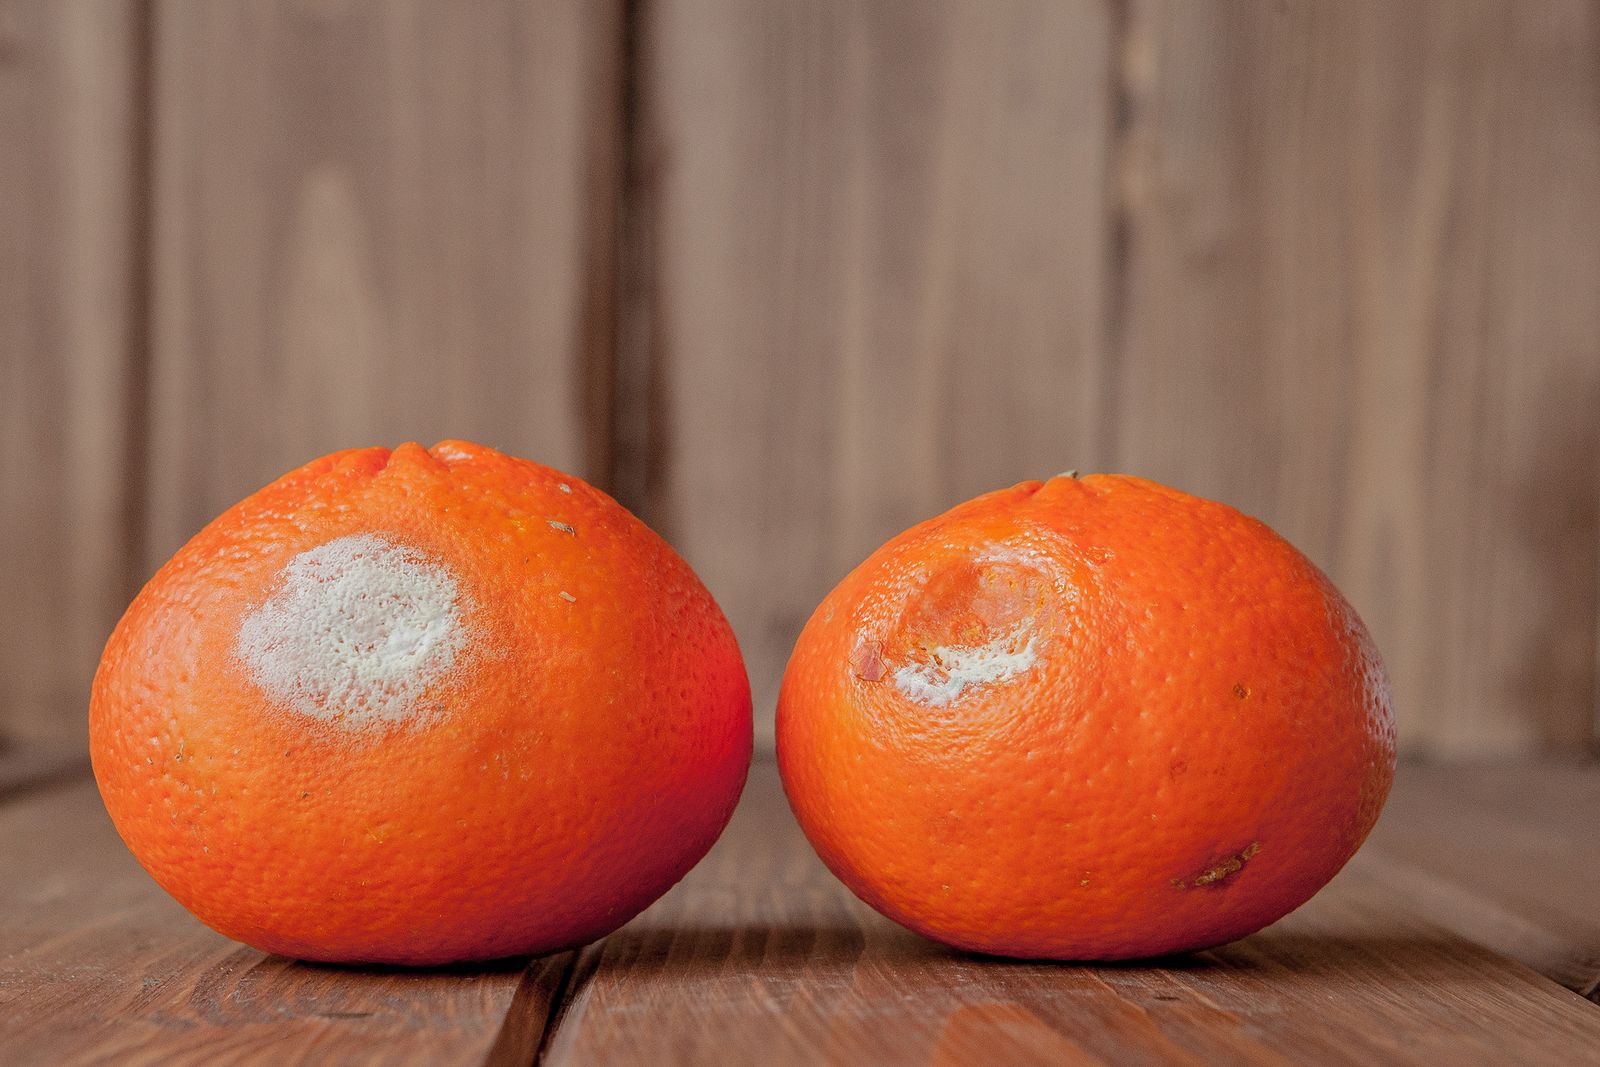 Estos son los riesgos de quitar la parte podrida de las frutas y comerte el resto despreocupadamente